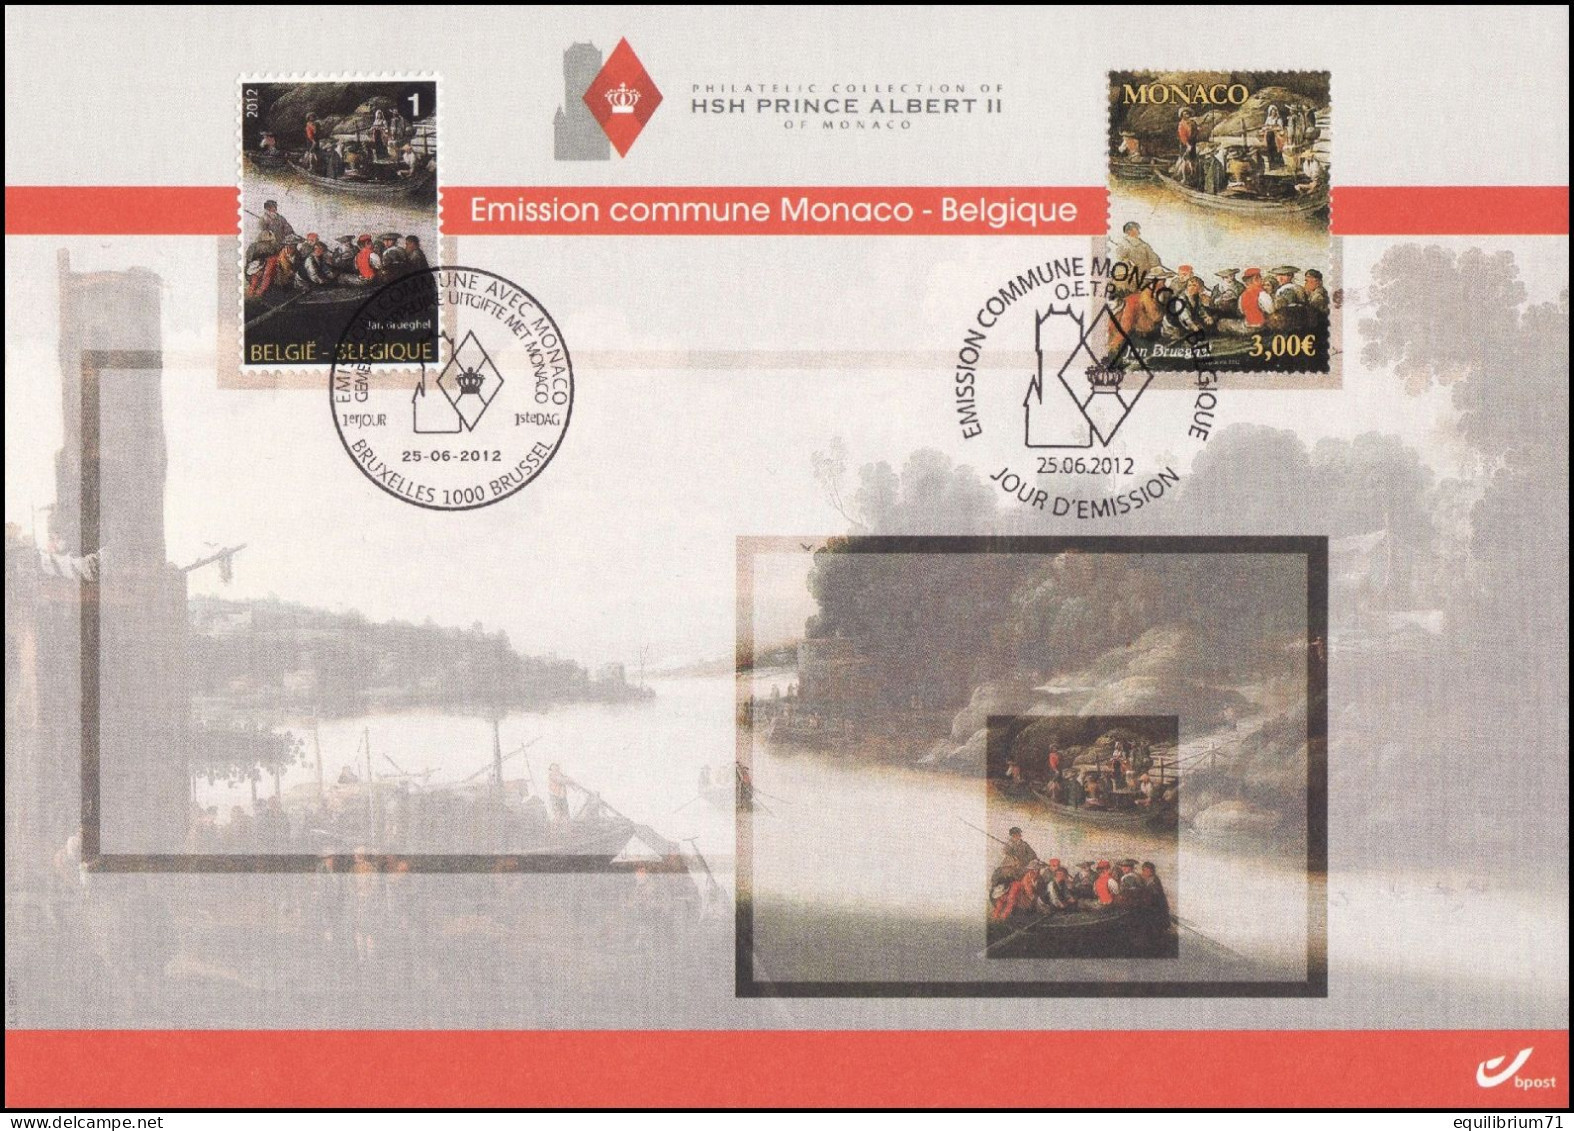 4254° CS/HK - Collection De S.A.S. Albert II - Émission Commune Avec Monaco / Gemenschappelijke Uitgifte Met Monaco - Cartes Souvenir – Emissions Communes [HK]